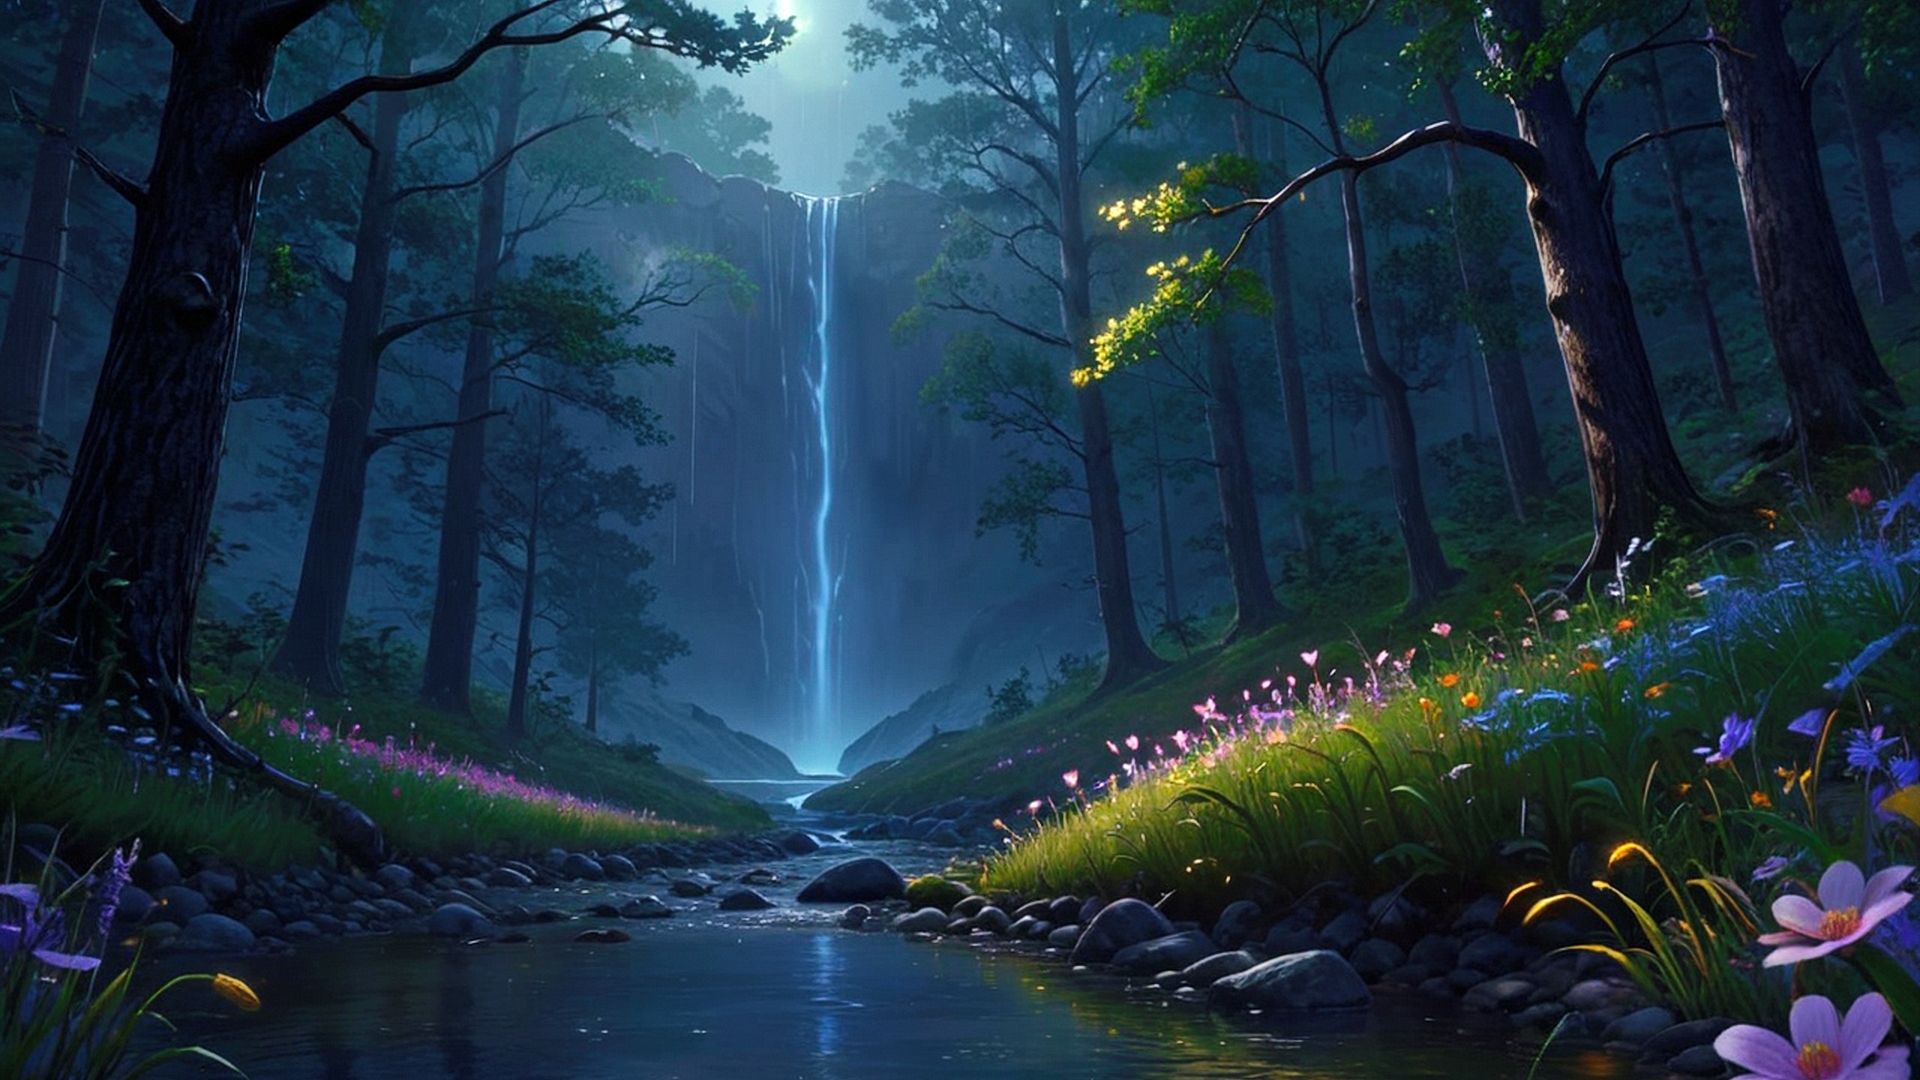 Бесплатное фото Лесной пейзаж и  водопад с речкой